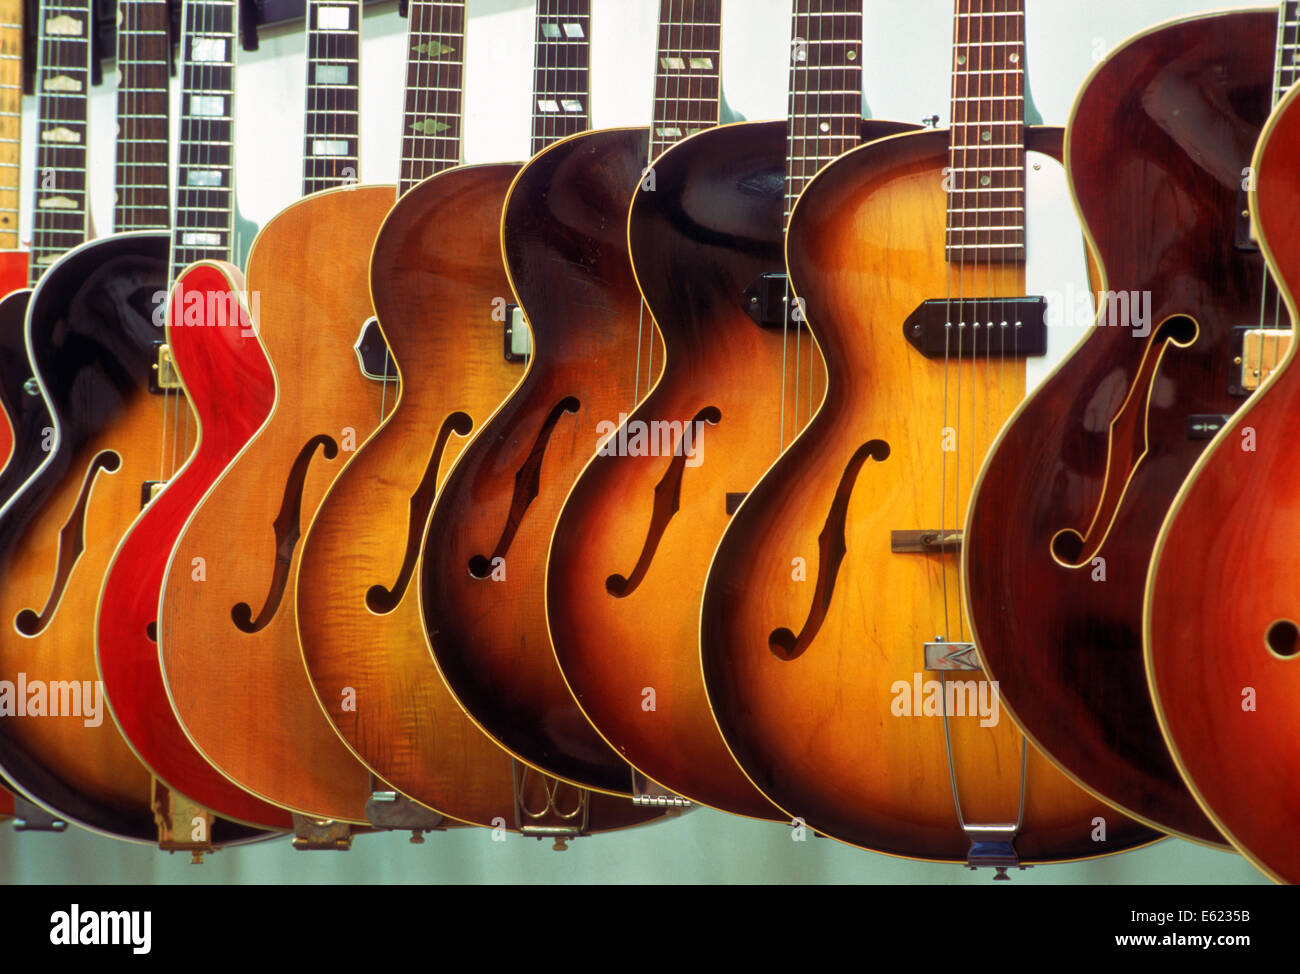 Fabricado en los Estados Unidos. Guitarras Grunn shop en Nashville, Tennessee, la venta de instrumentos musicales Foto de stock